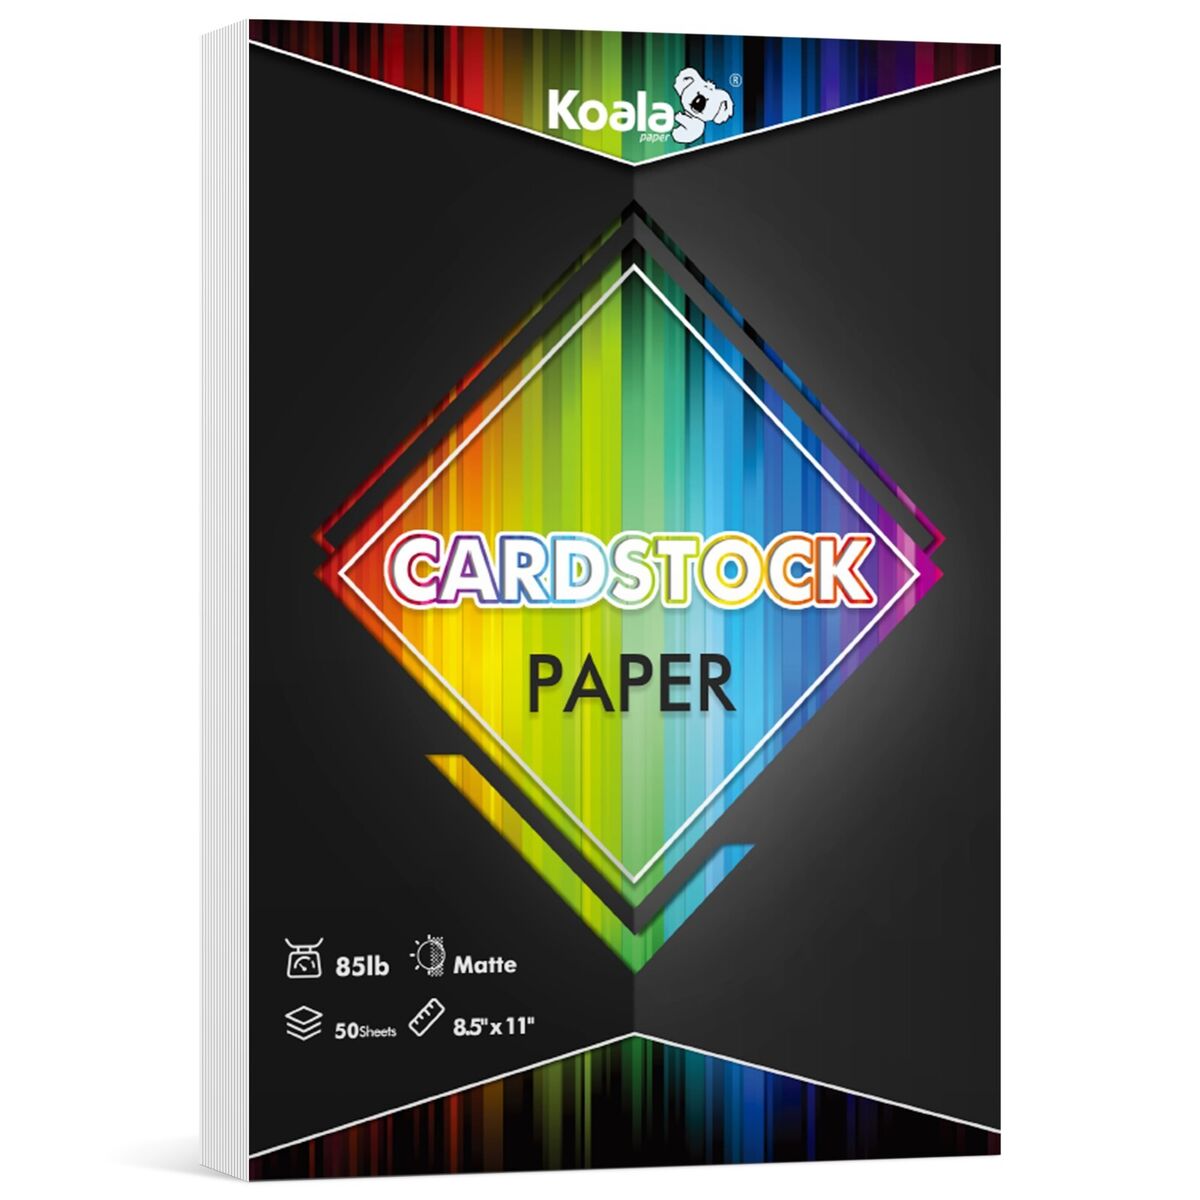 Lot Koala Cardstock Paper 8.5x11 White Matt Photo Paper Inkjet + Laser 85lb  230g